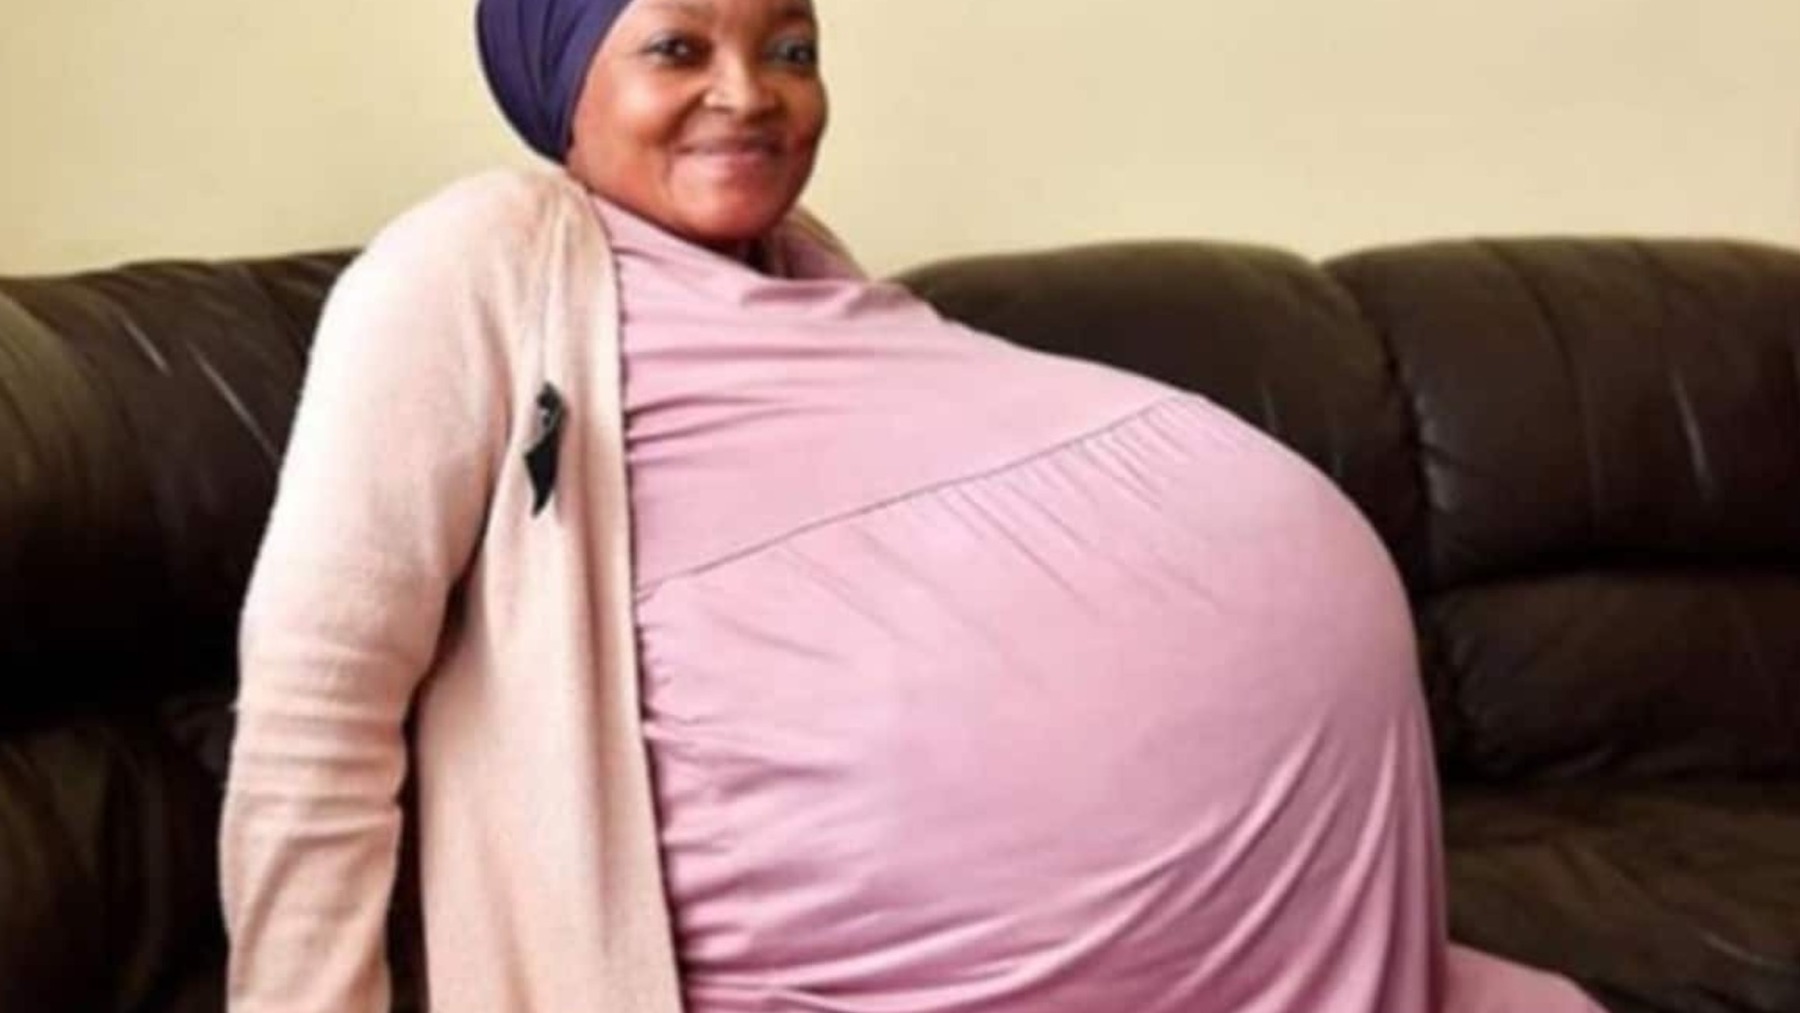 El récord de la mujer sudafricana que ha dado a luz a 10 bebés podría ser mentira